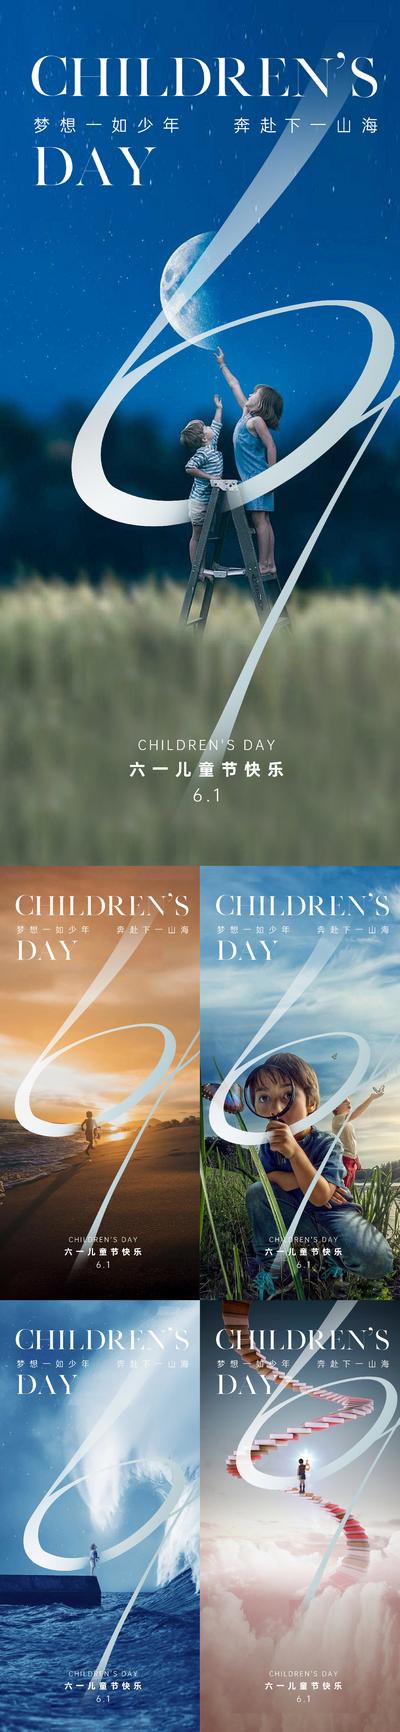 南门网 广告 海报 地产 六一 国际 儿童节 梦想 梦幻 欢乐 童年 孩子 星空 美图 追逐 飞翔 跨越 61 阶梯 光明 宇宙